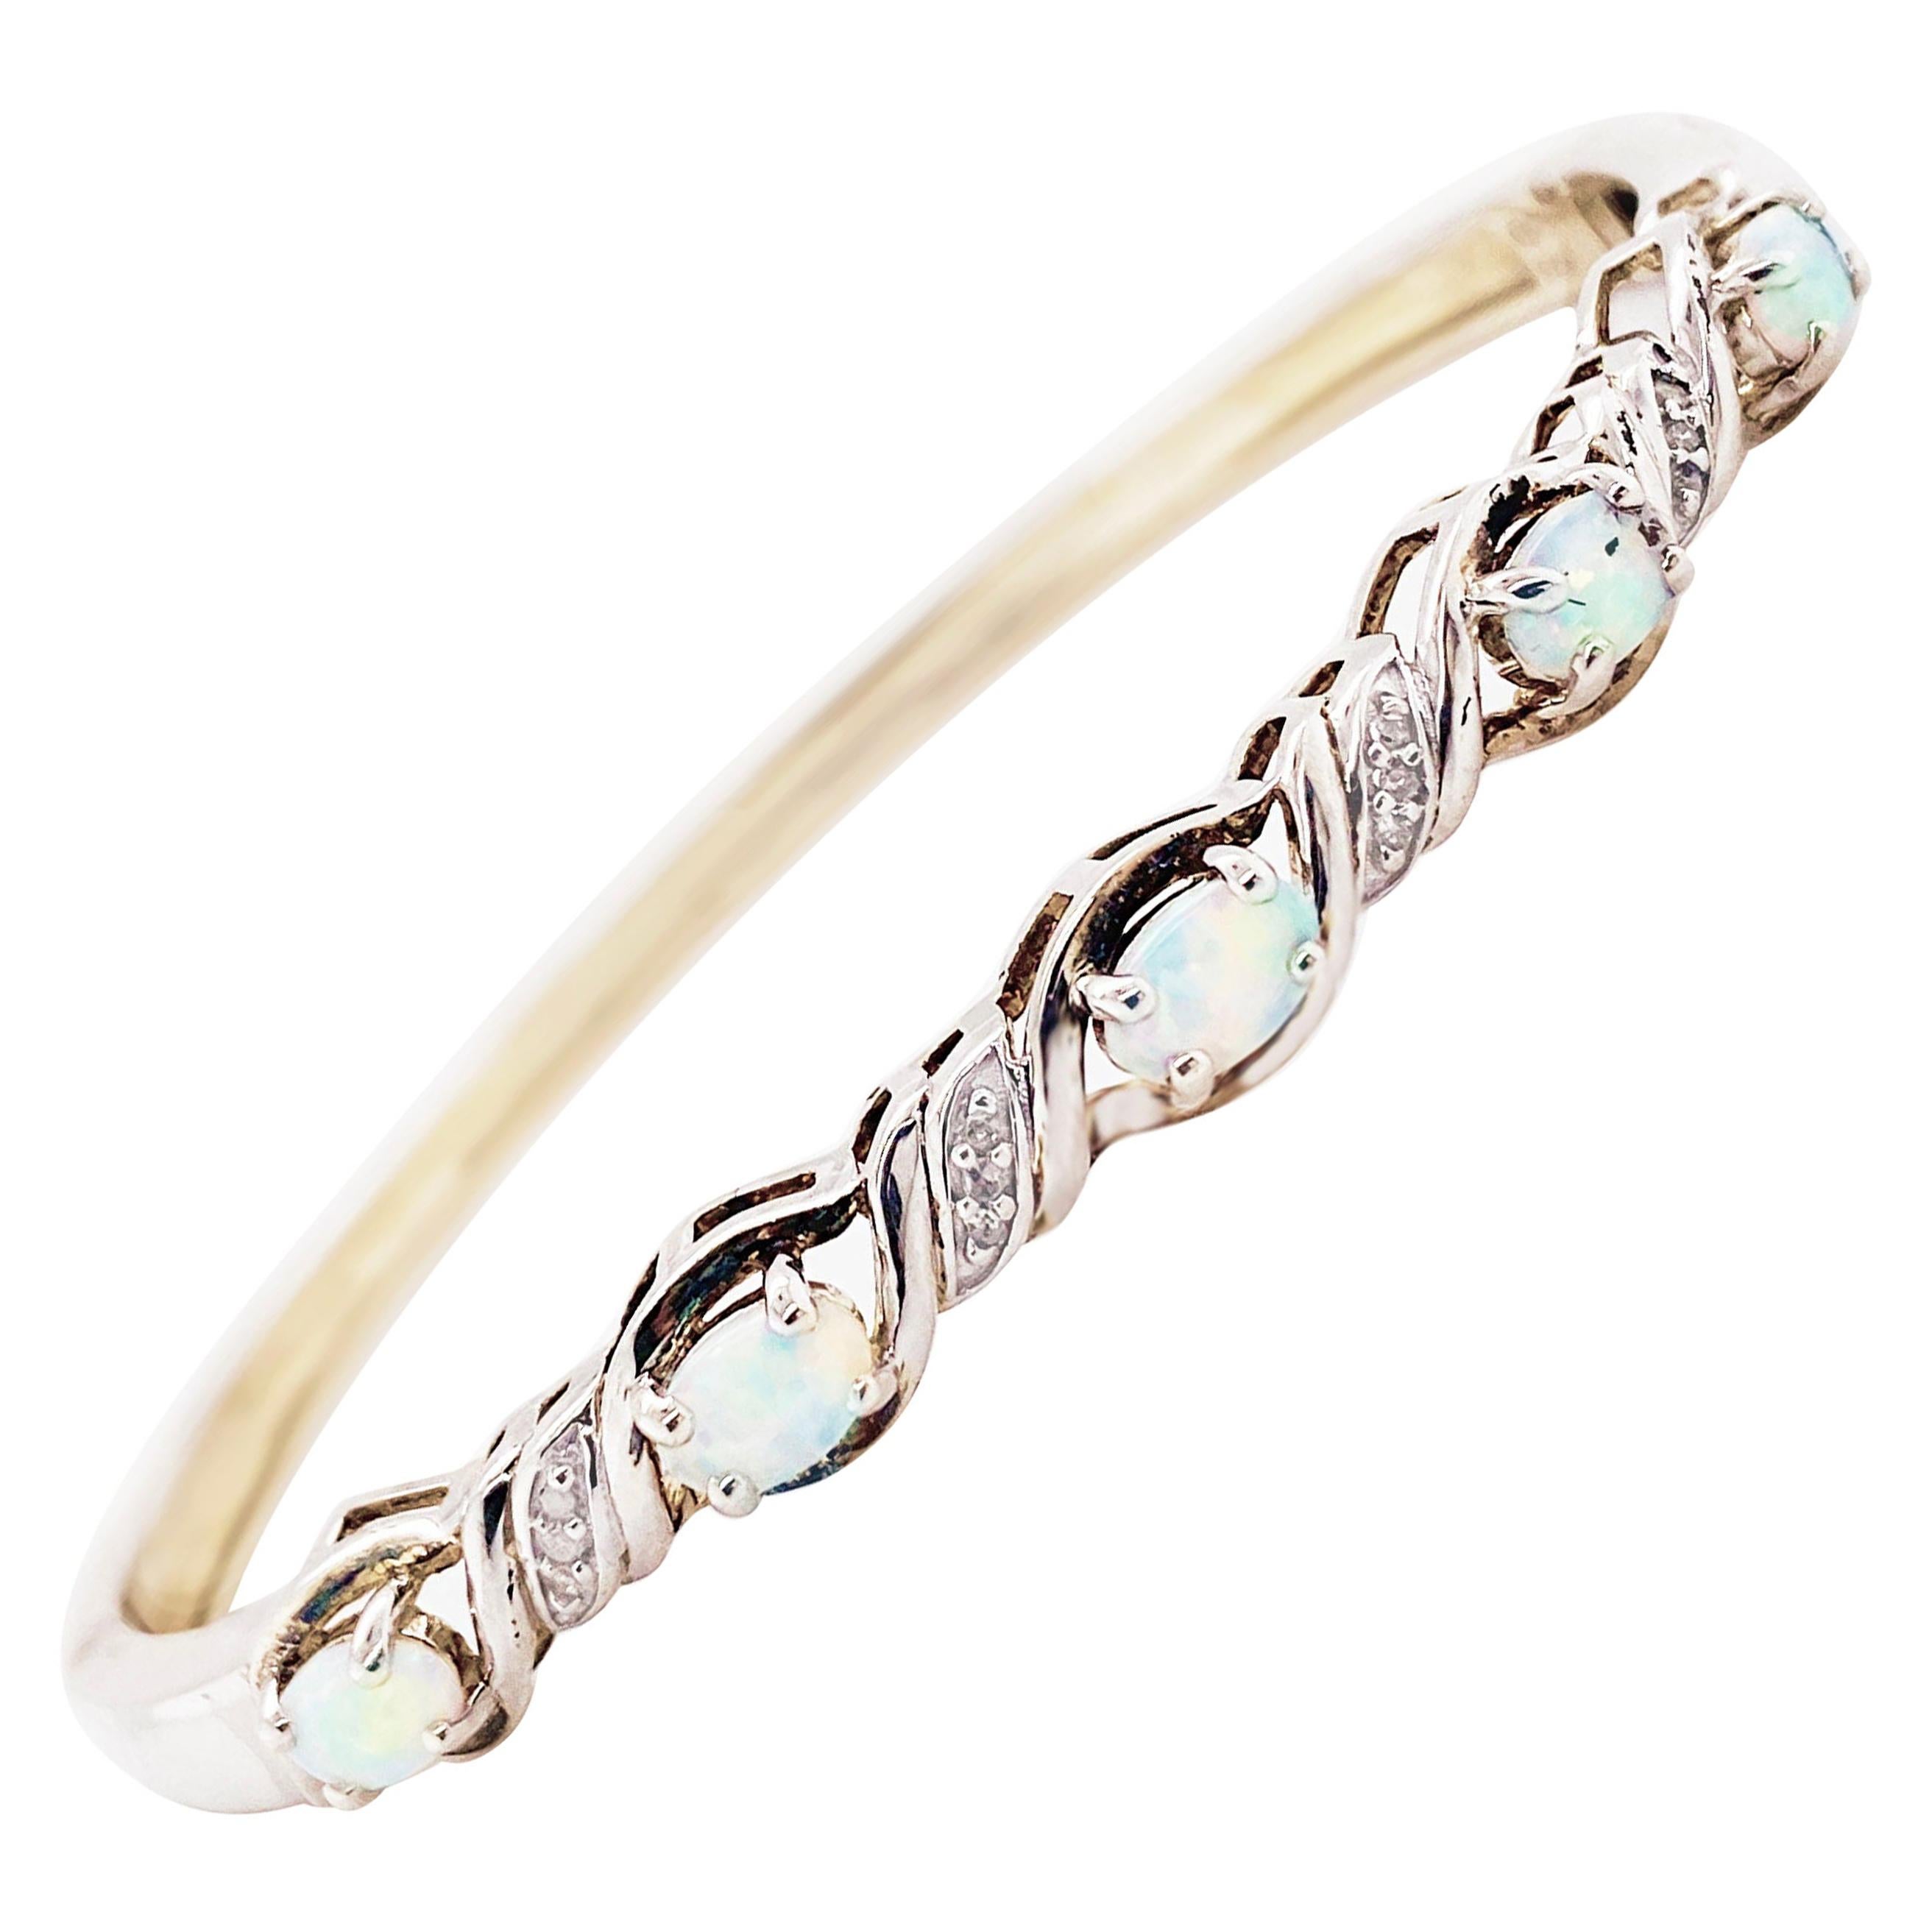 Opal Bangle Bracelet with Diamonds in Sterling Silver, Genuine Opal Bracelet